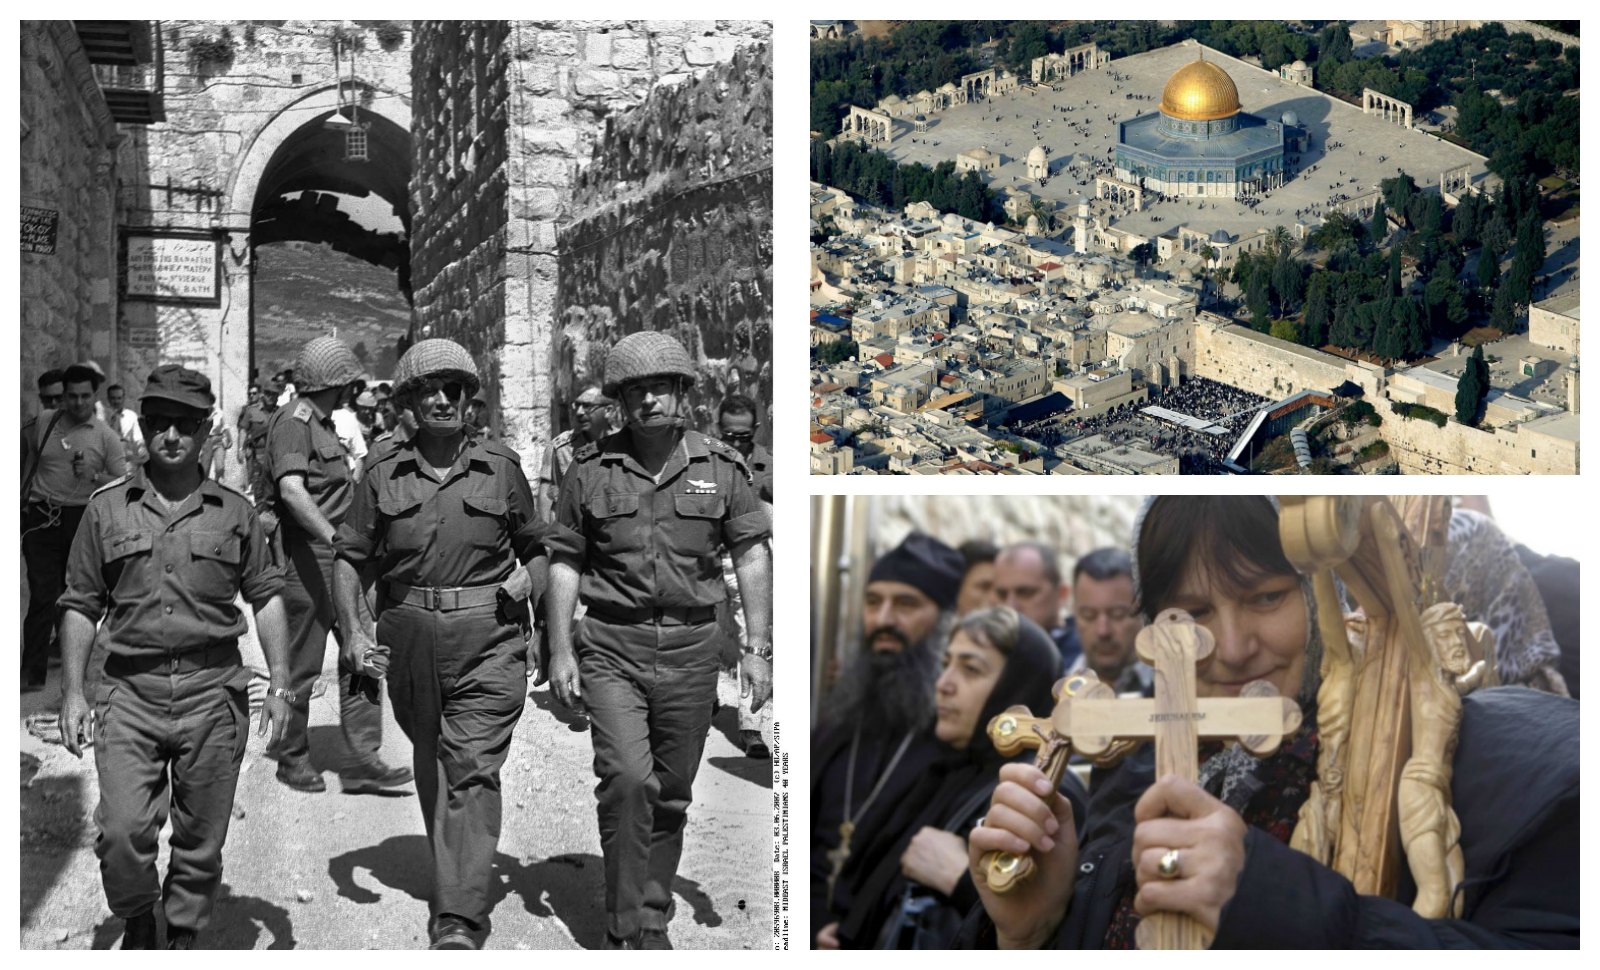 Jérusalem: ce que M6 n’a pas dit